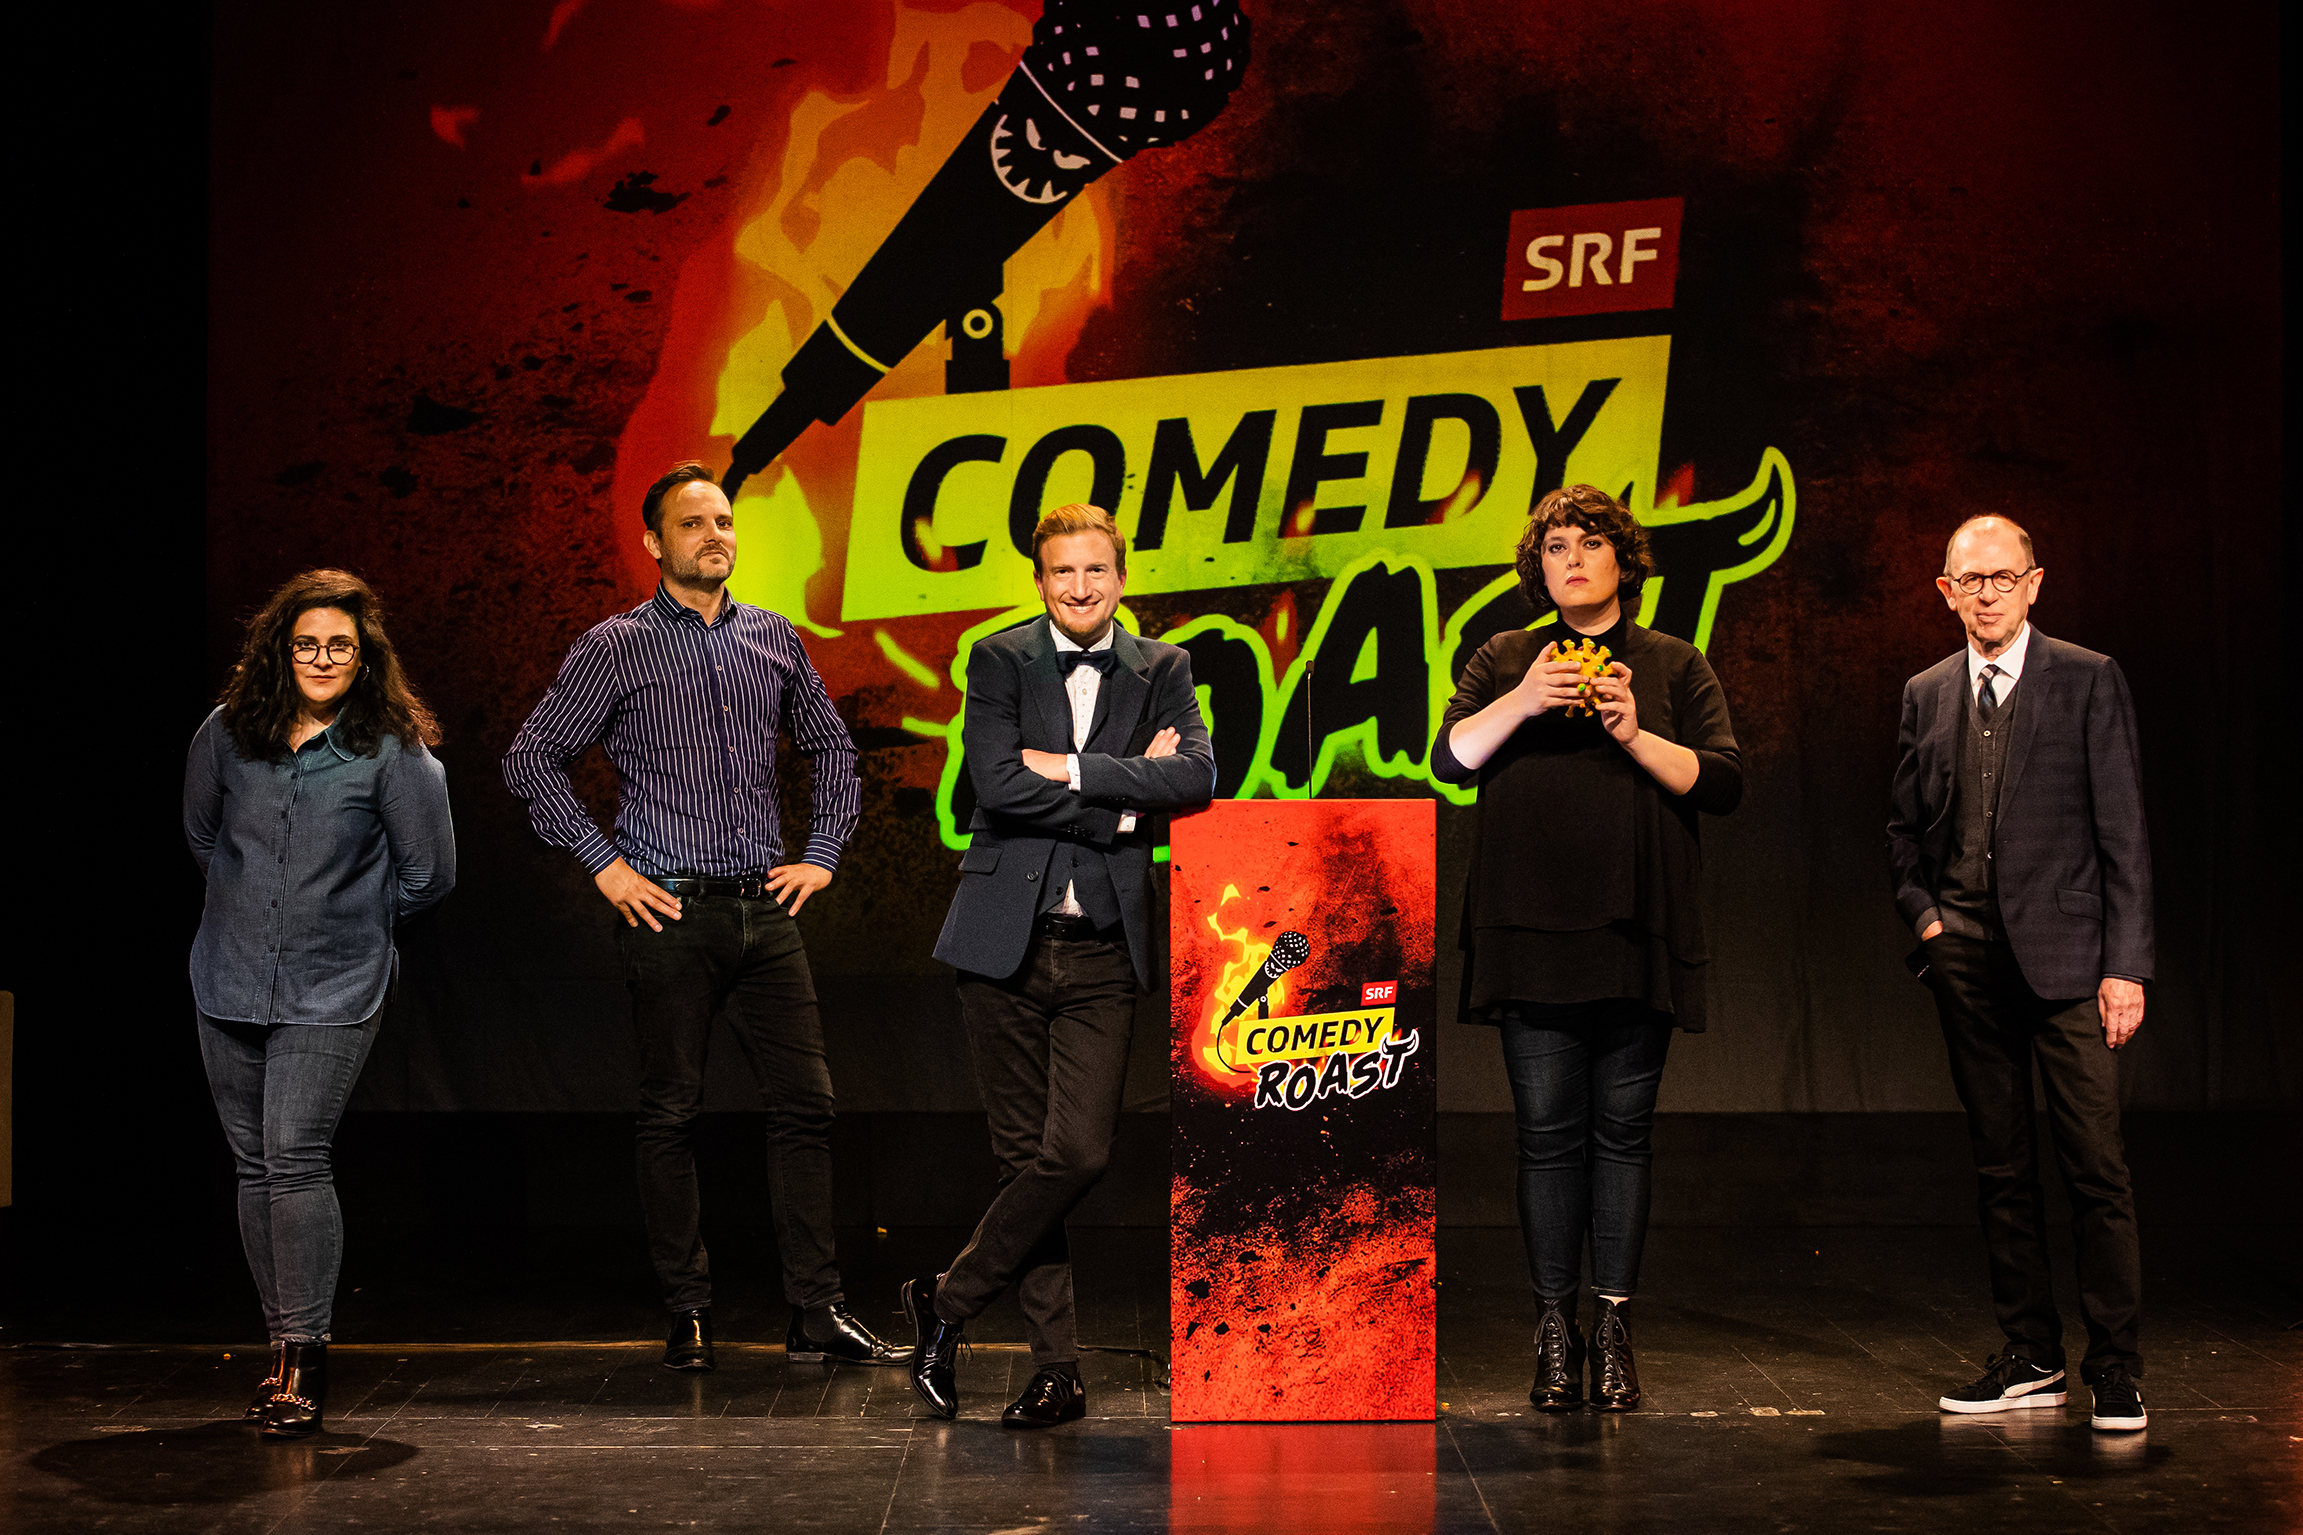 SRF Comedy Roast – Corona Spezial Rebekka Lindauer, Dominic Deville, Stefan Büsser, Patti Basler, Viktor Giacobbo